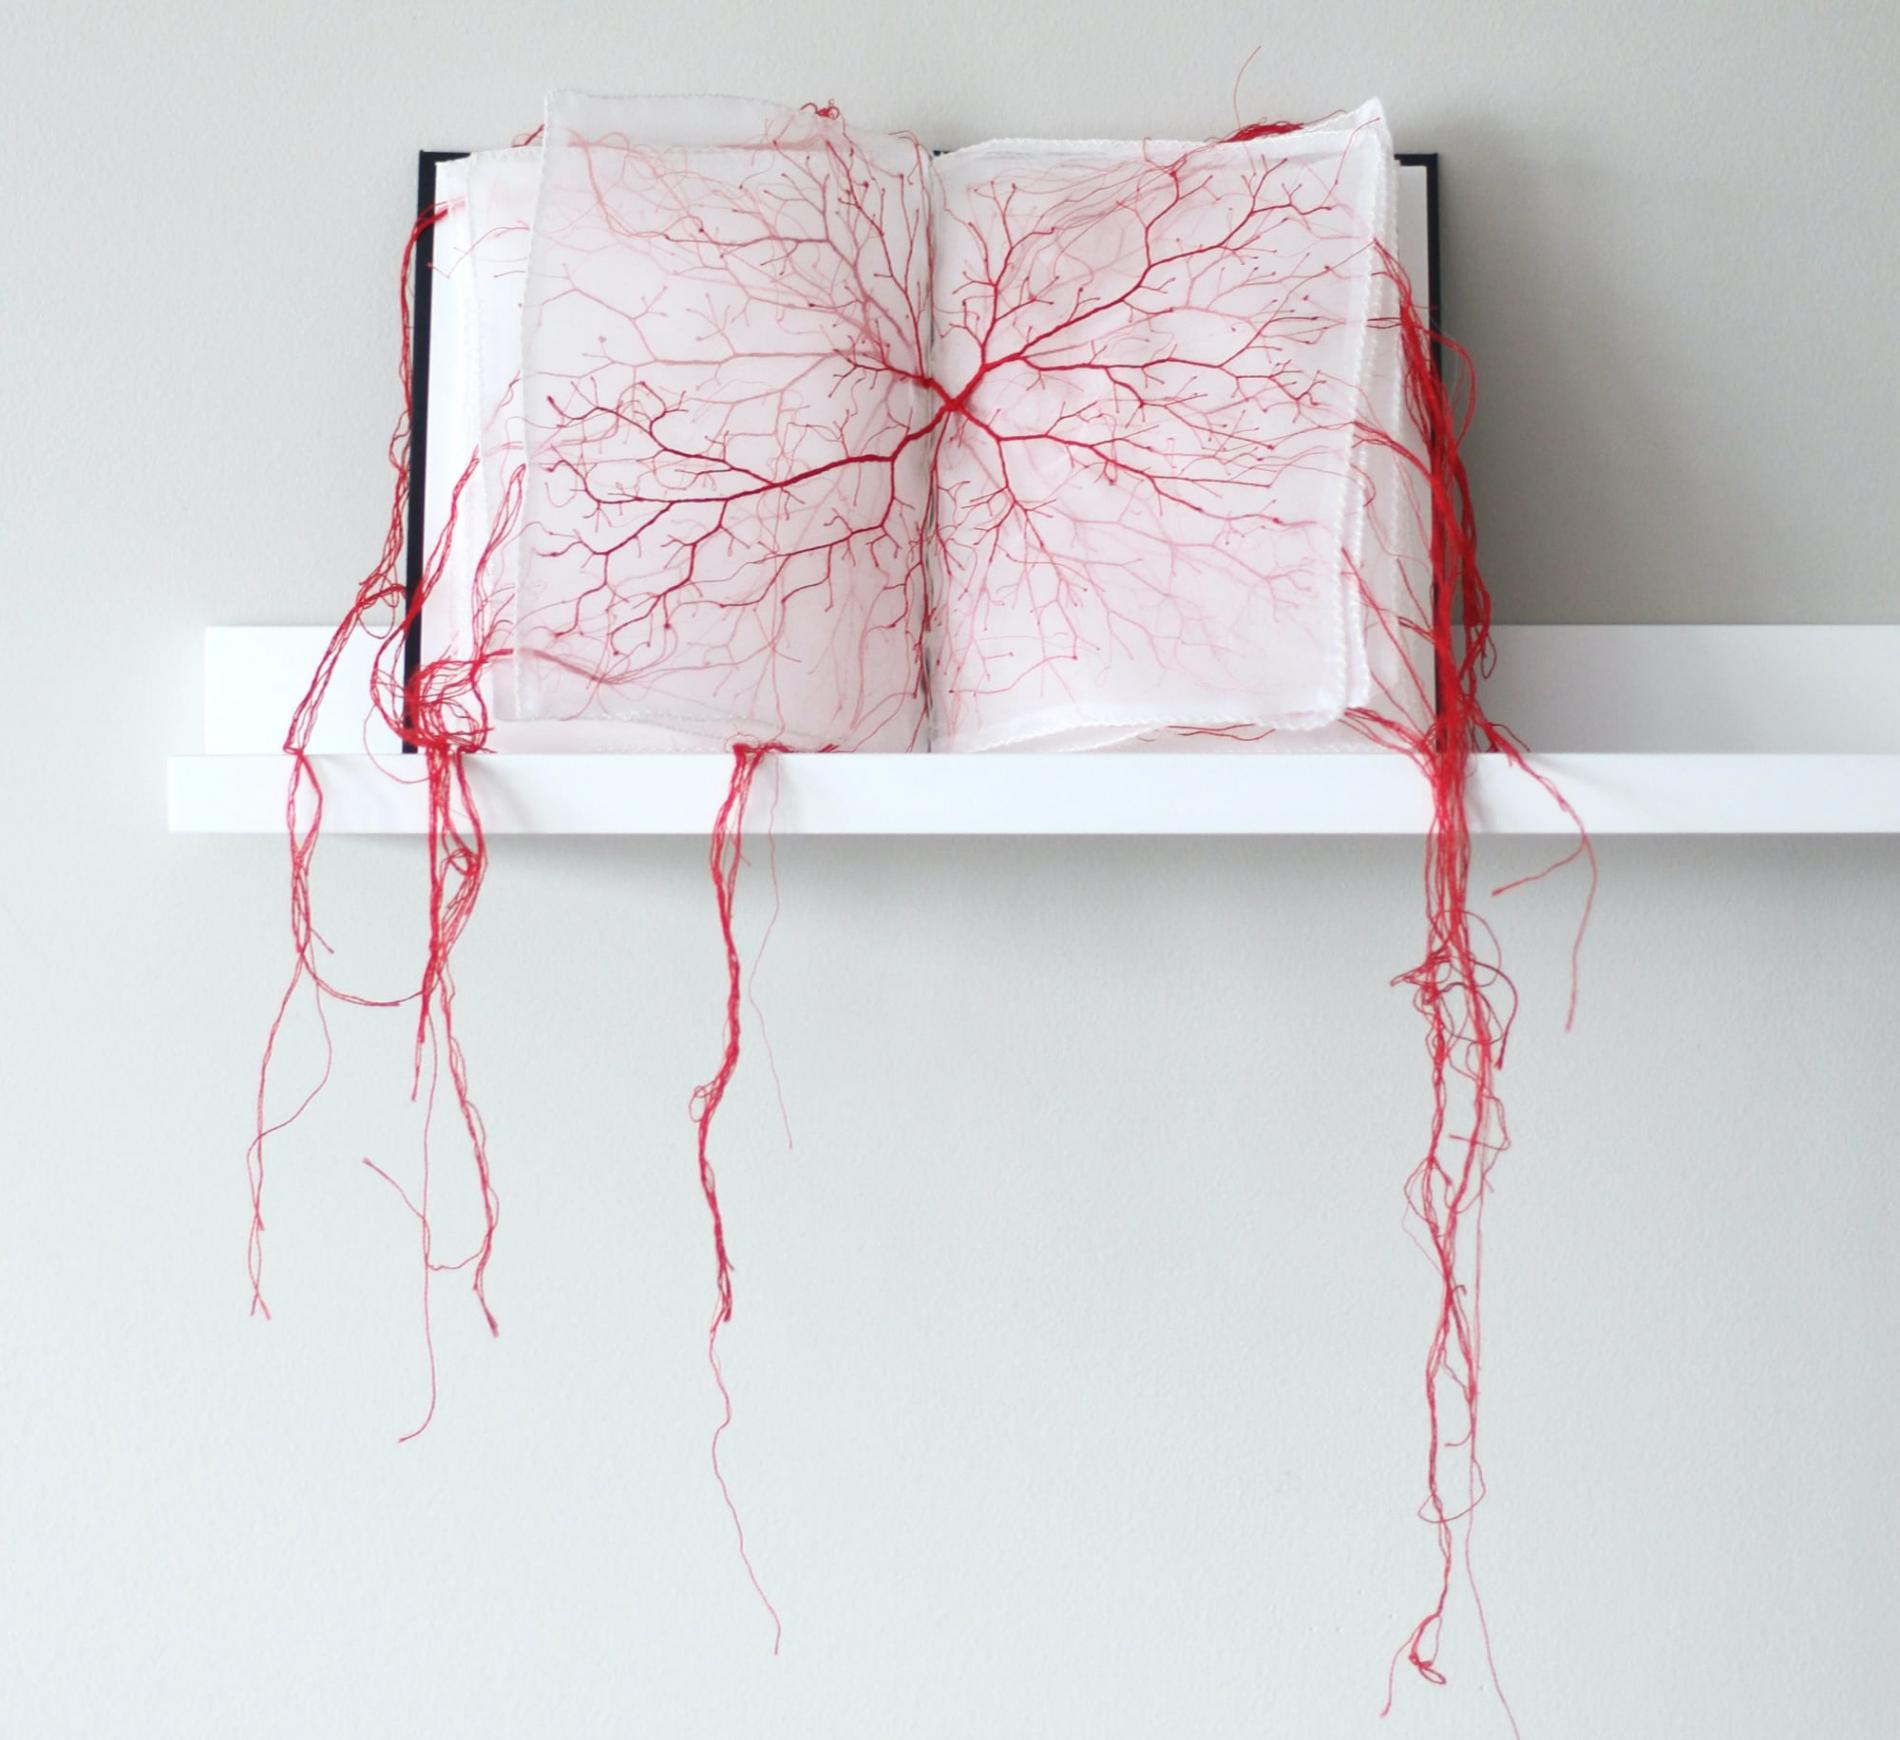 rima day artista japonesa hilo rojo libro arbol